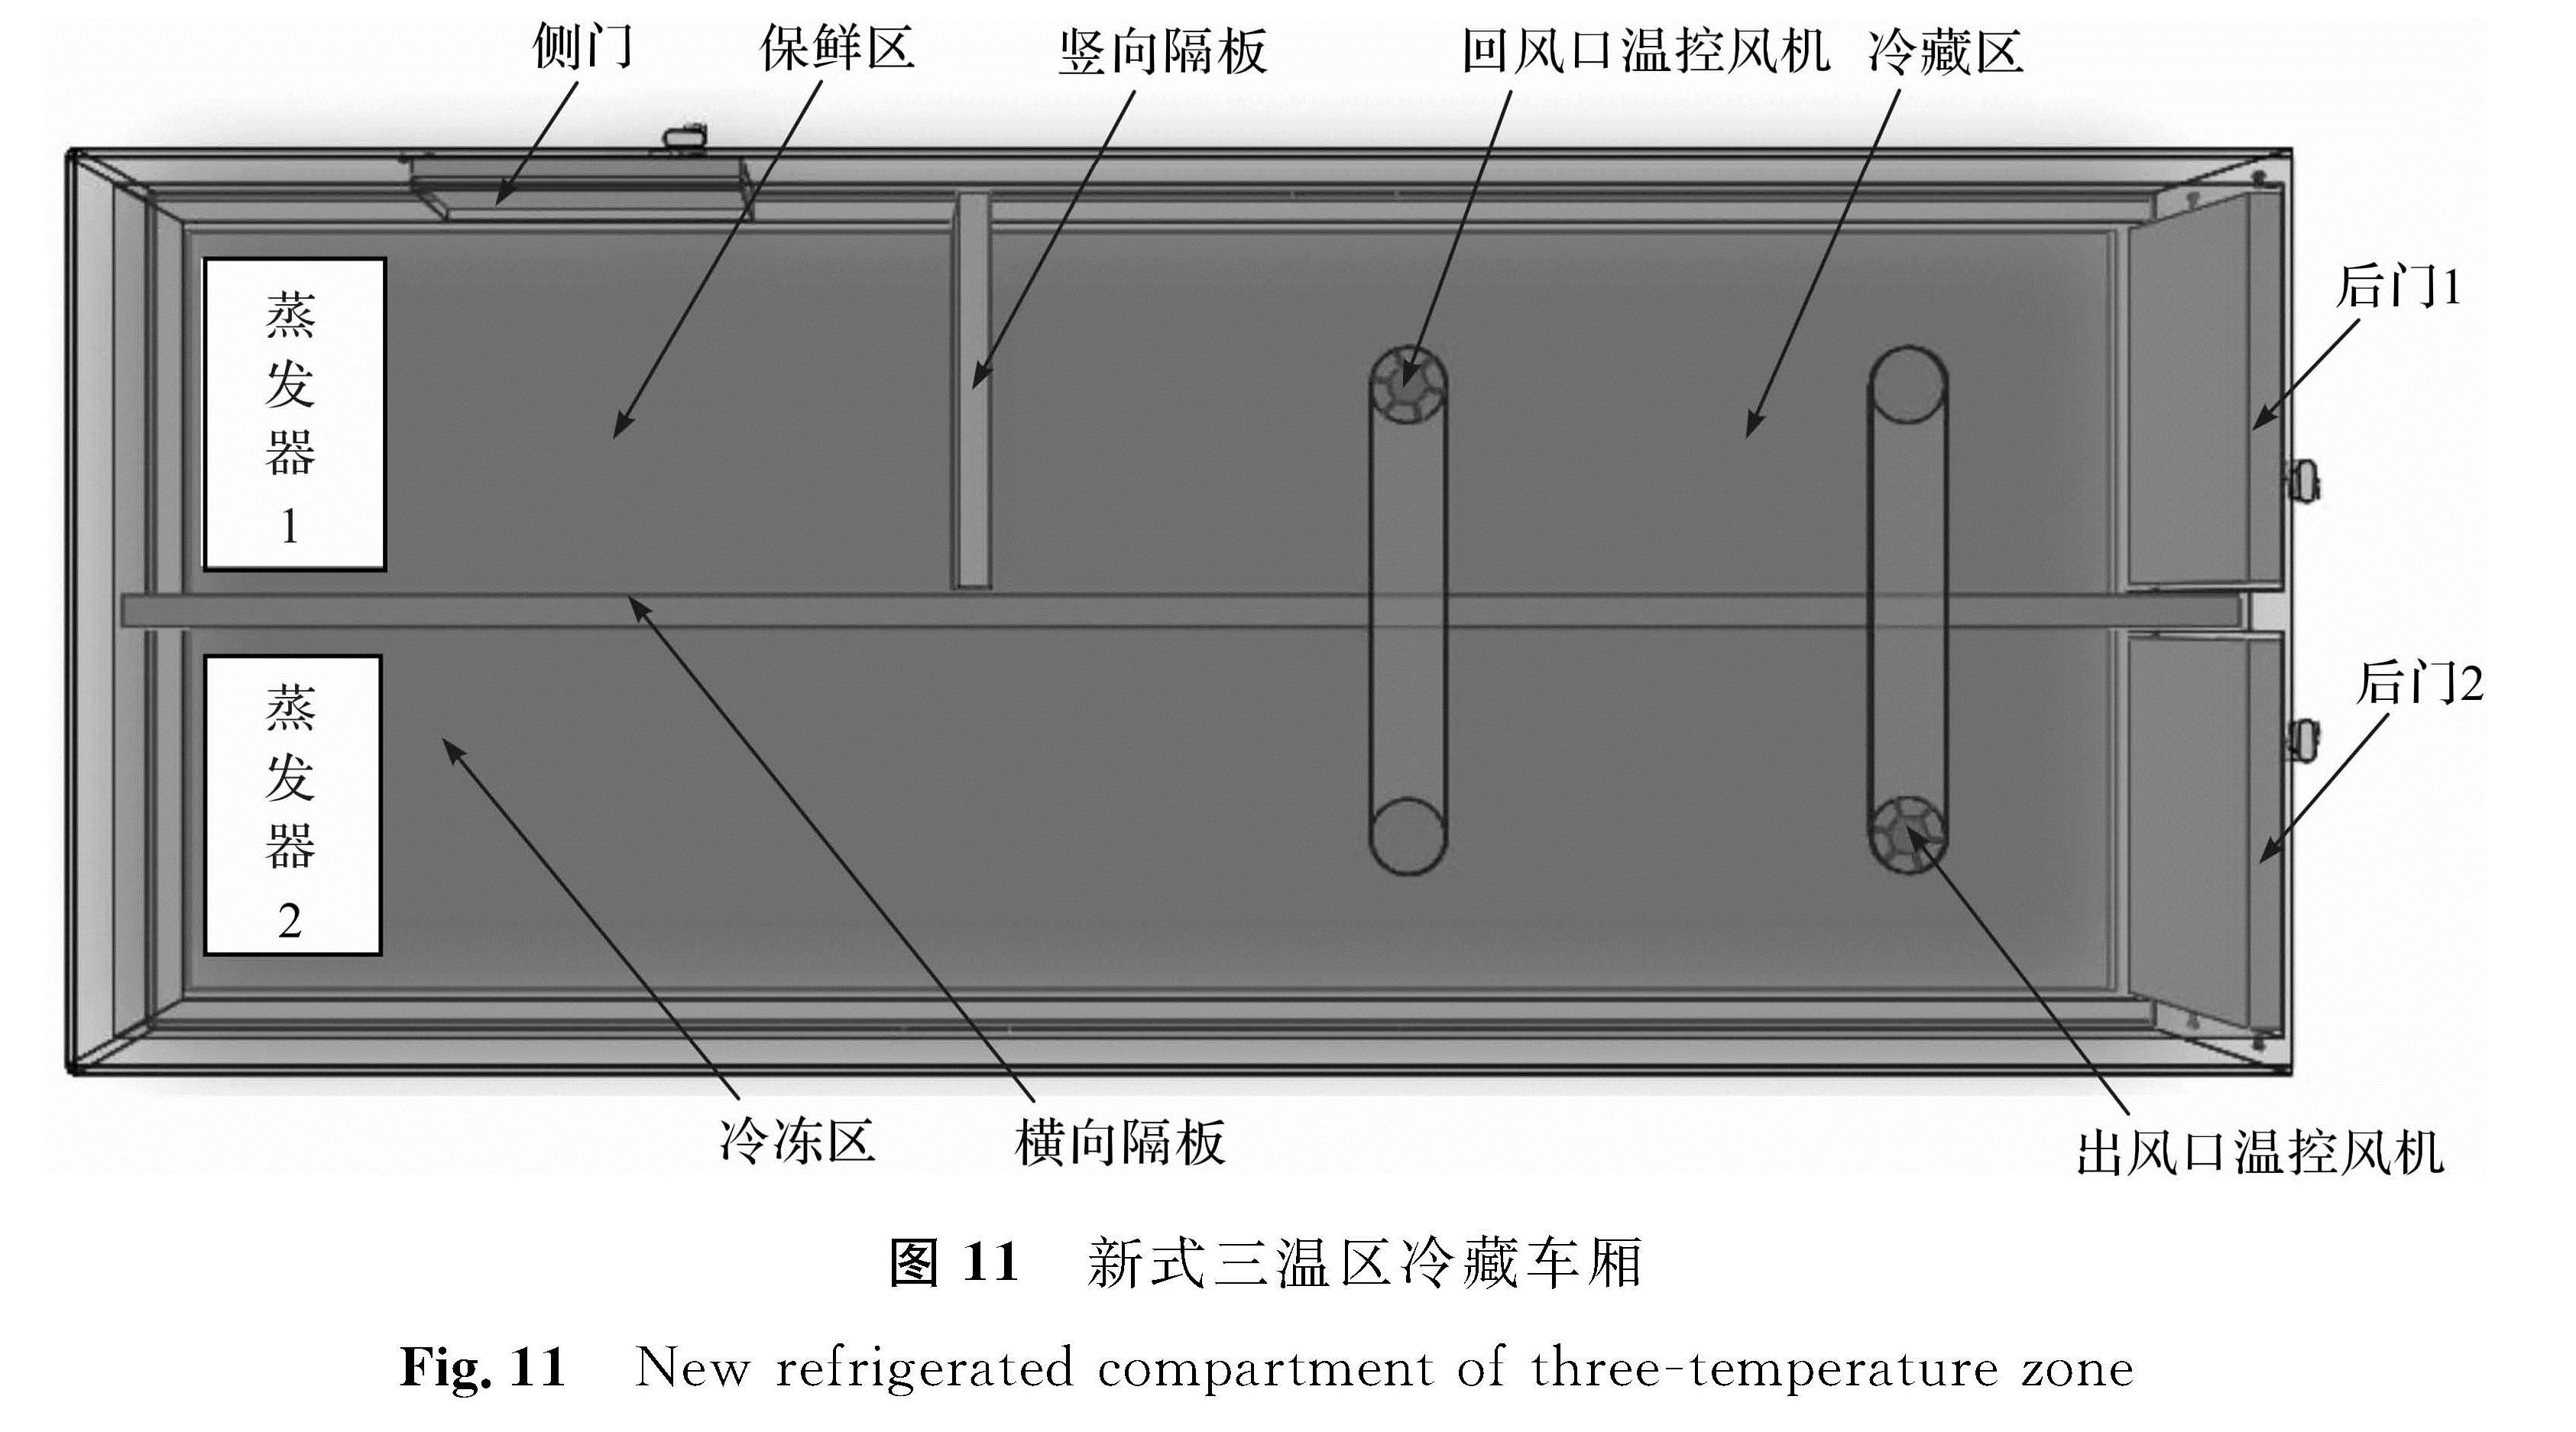 图 11 新式三温区冷藏车厢<br/>Fig.11 New refrigerated compartment of three -temperature zone